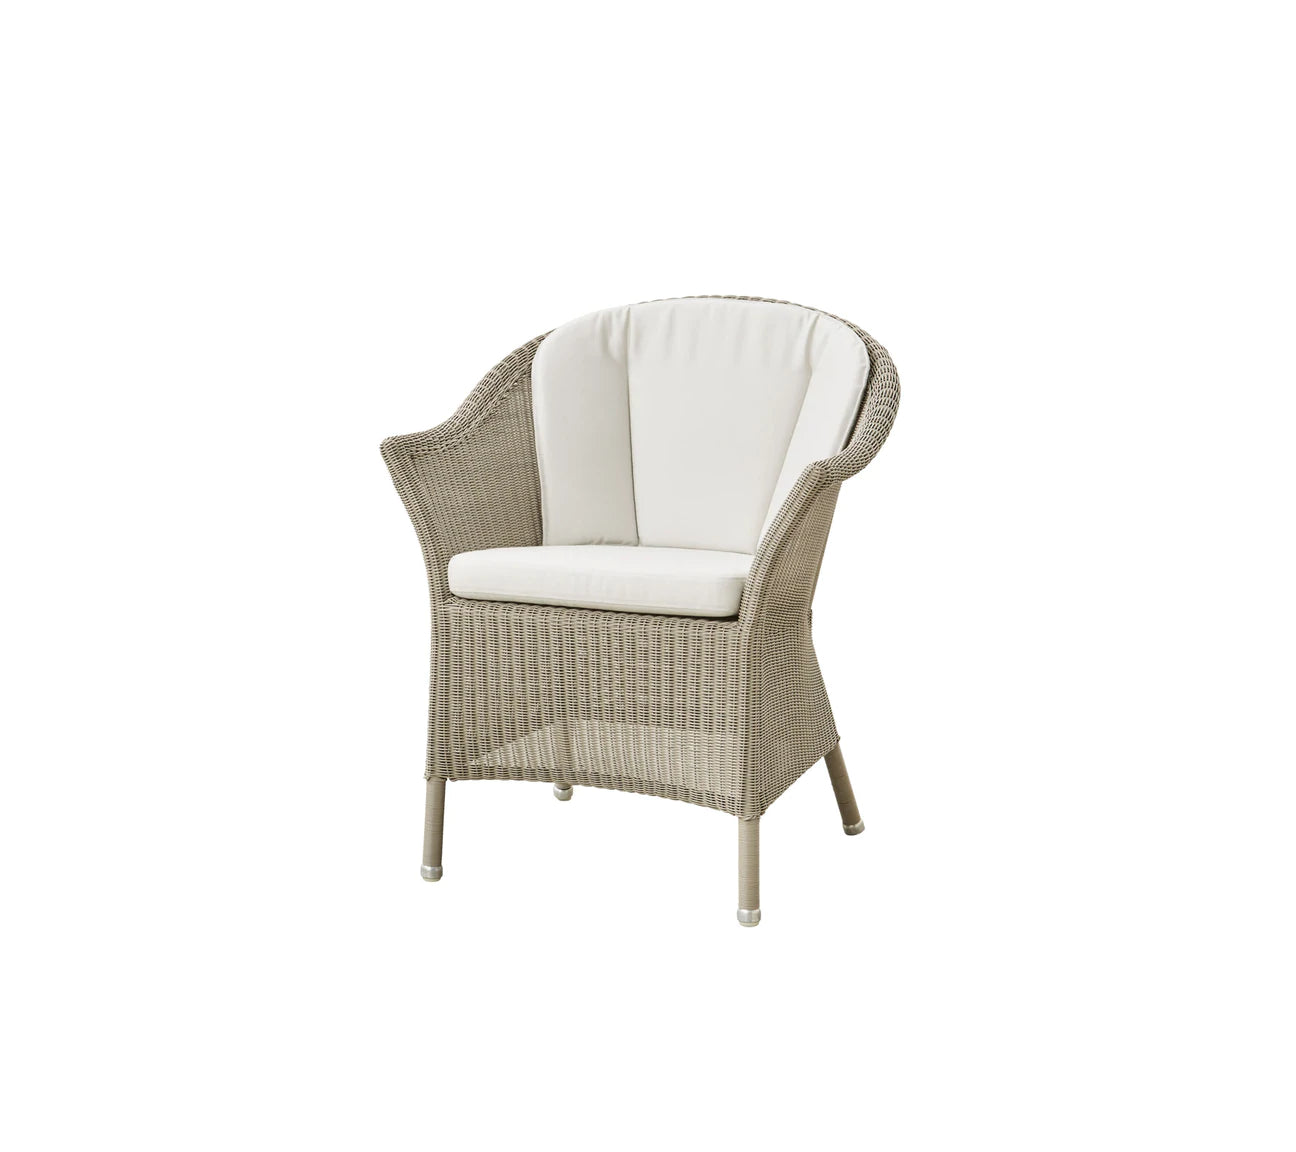 Cane-Line Lansing Stuhl, weiße Sitz- und Rückenpolster